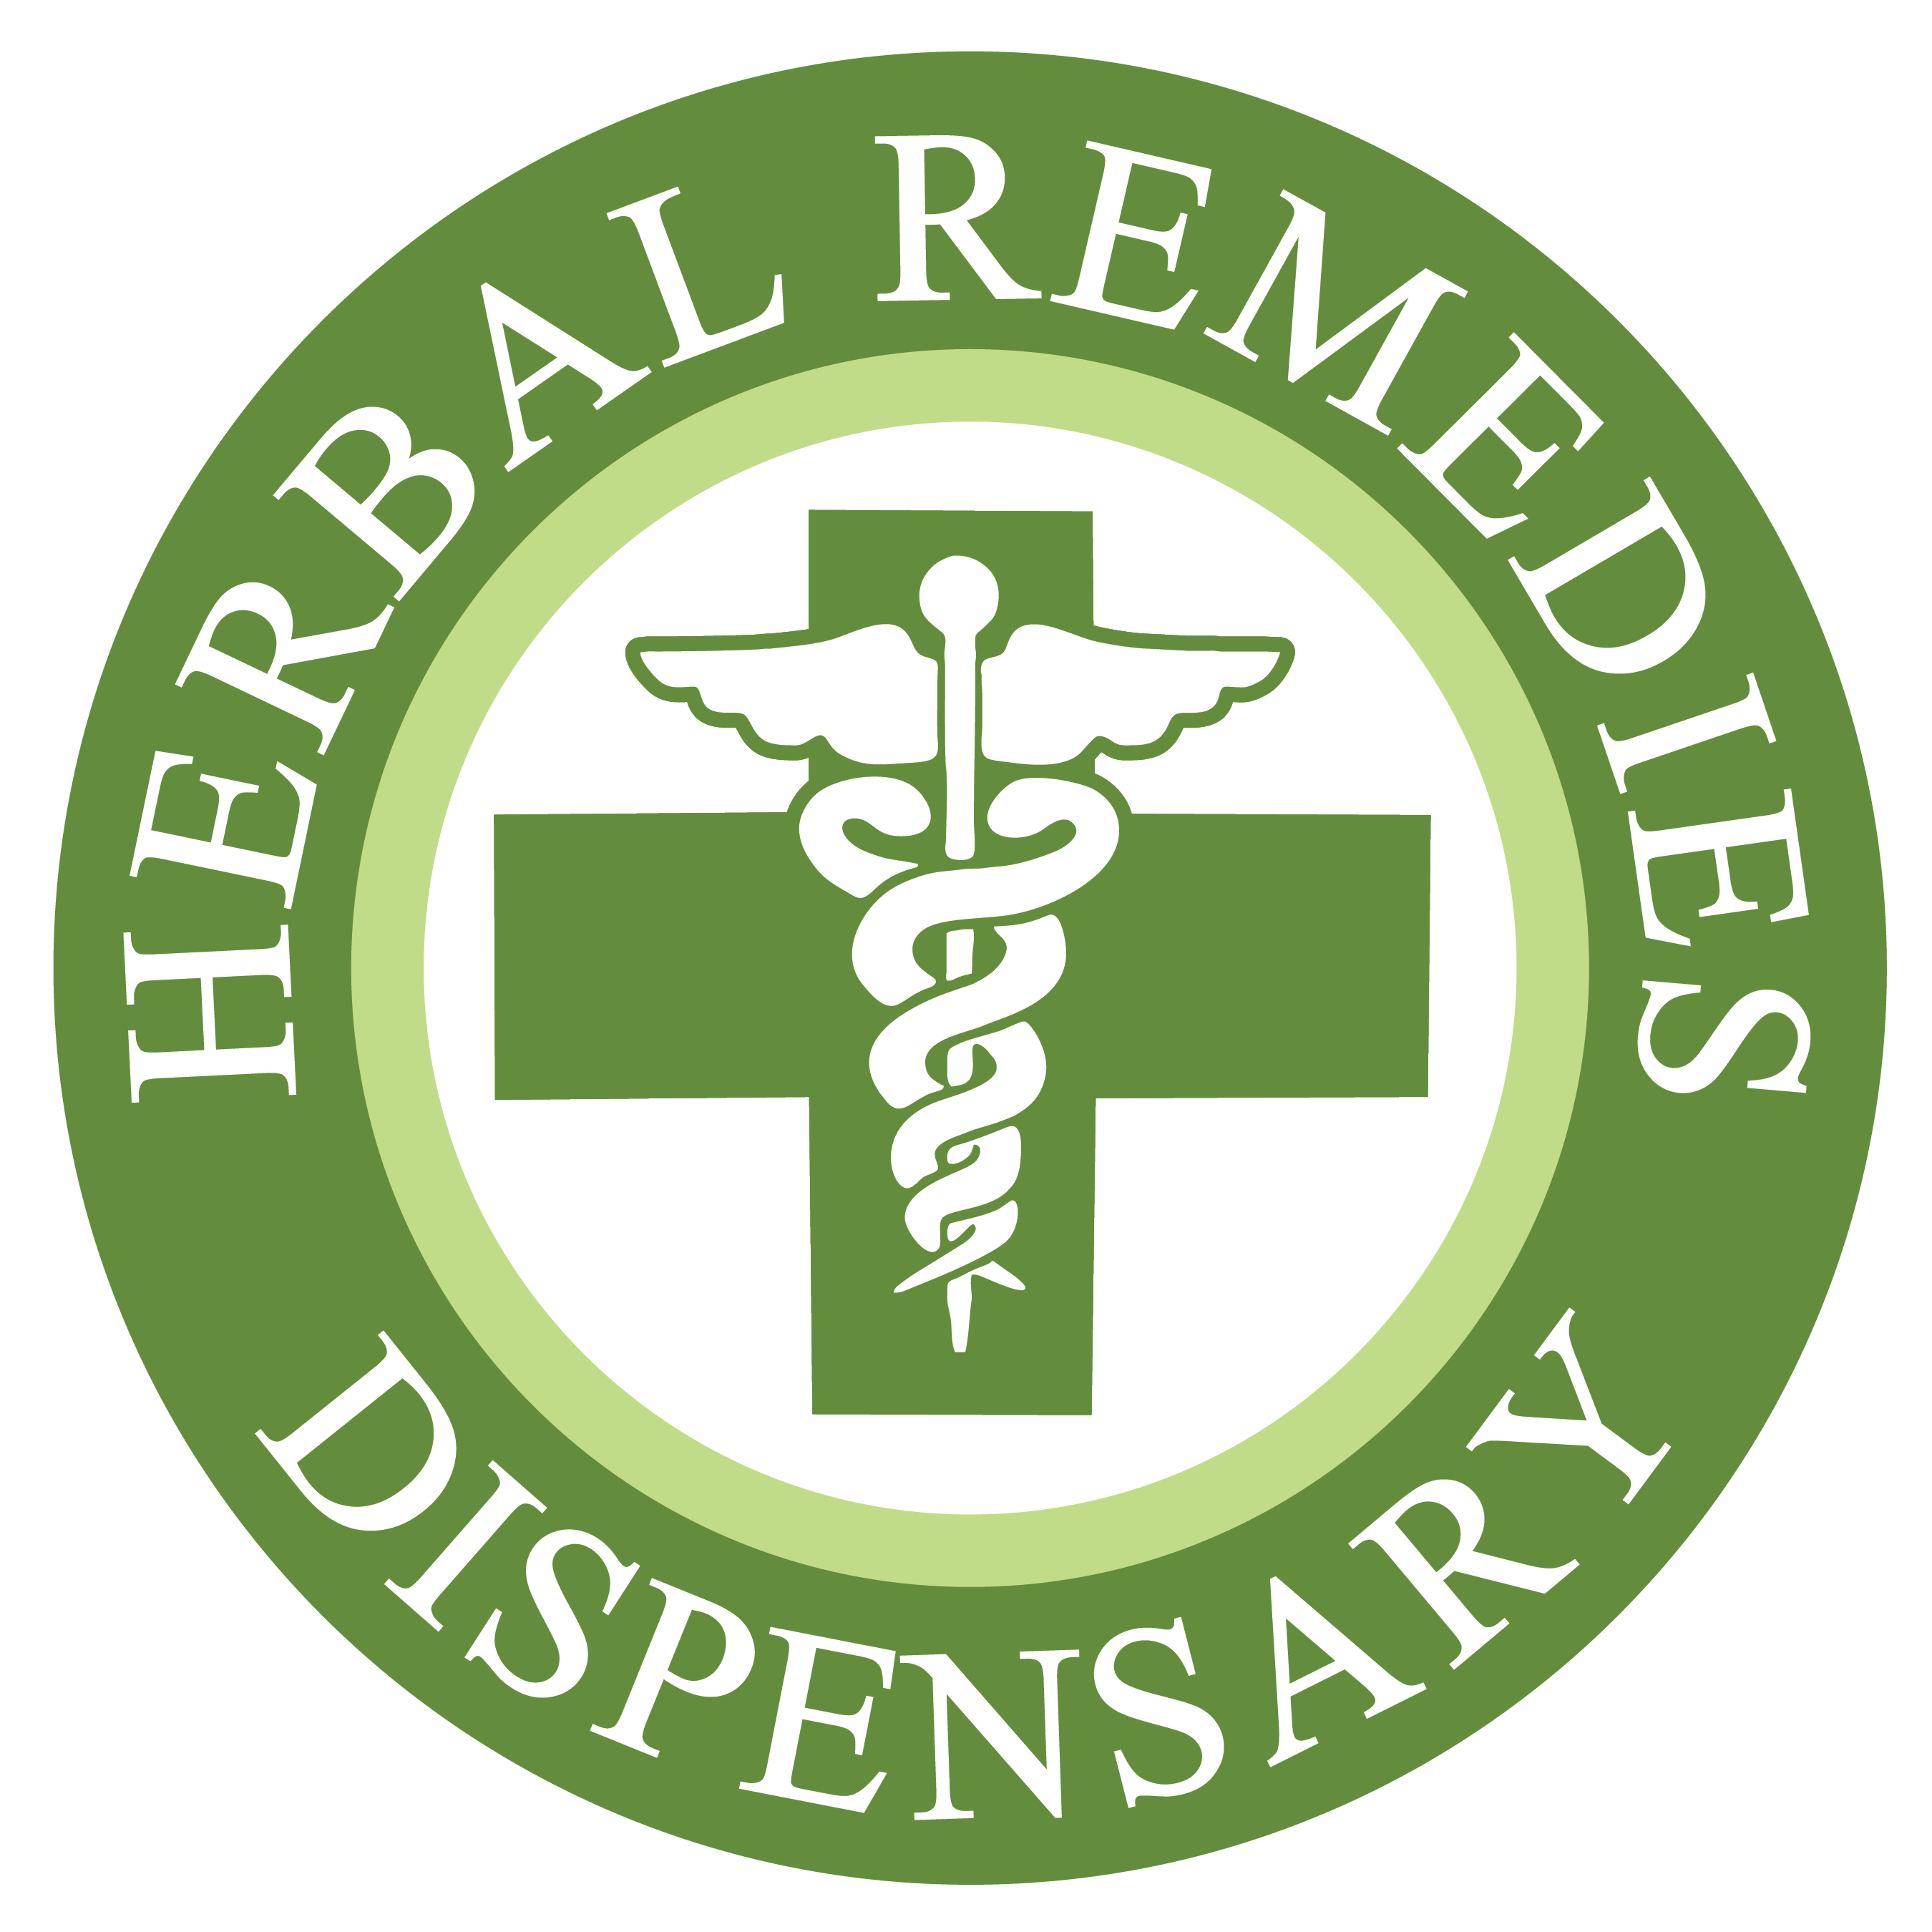 Herbal Remedies Dispensaries 1837 logo